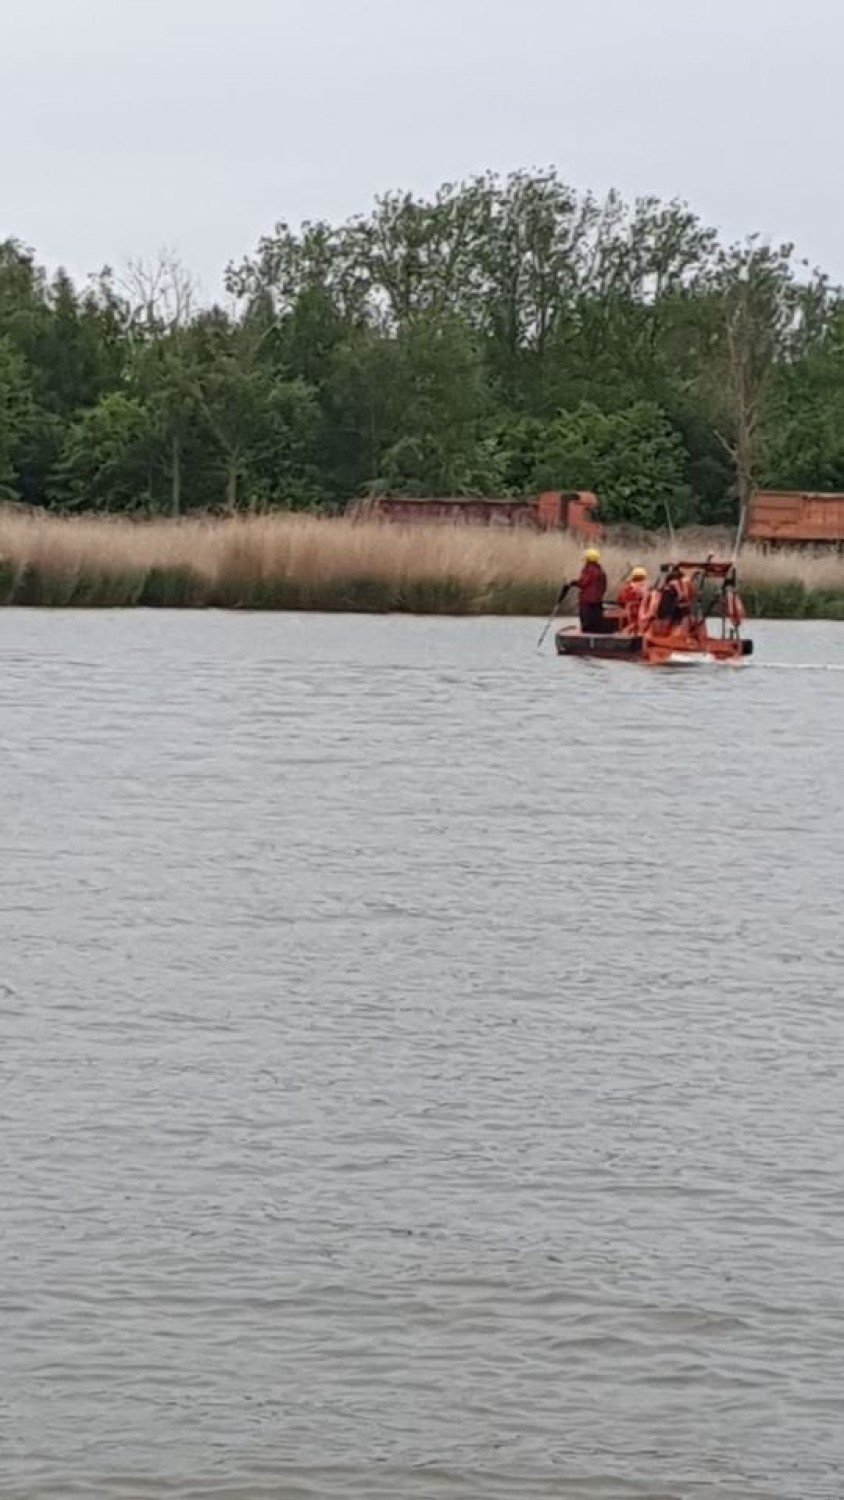 Poszukiwania dwóch zaginionych osób, które wypłynęły na jezioro  